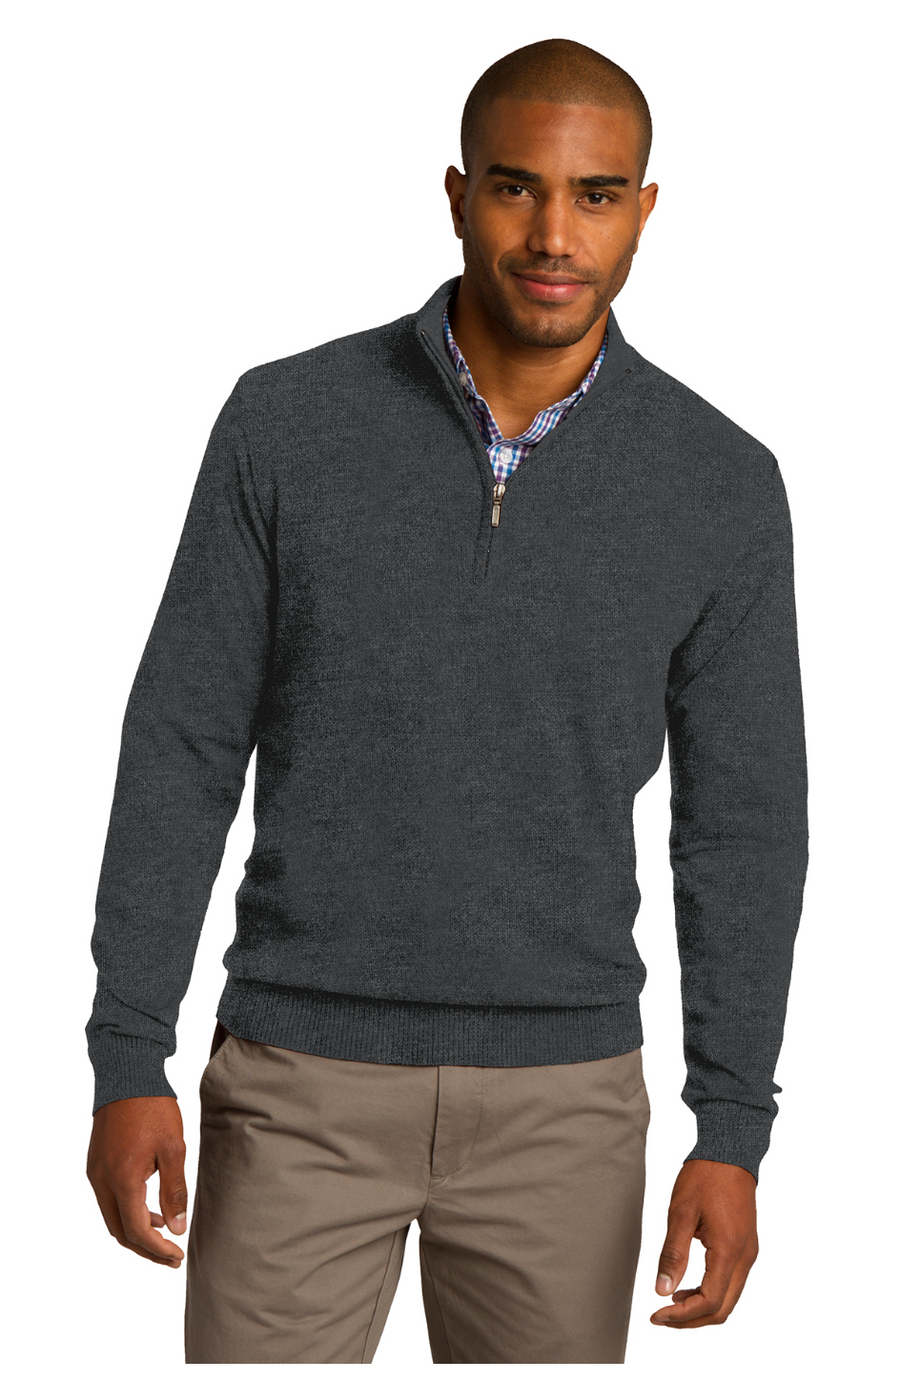 Authority Port Authority 1/2 Zip Sweater (Preorder)